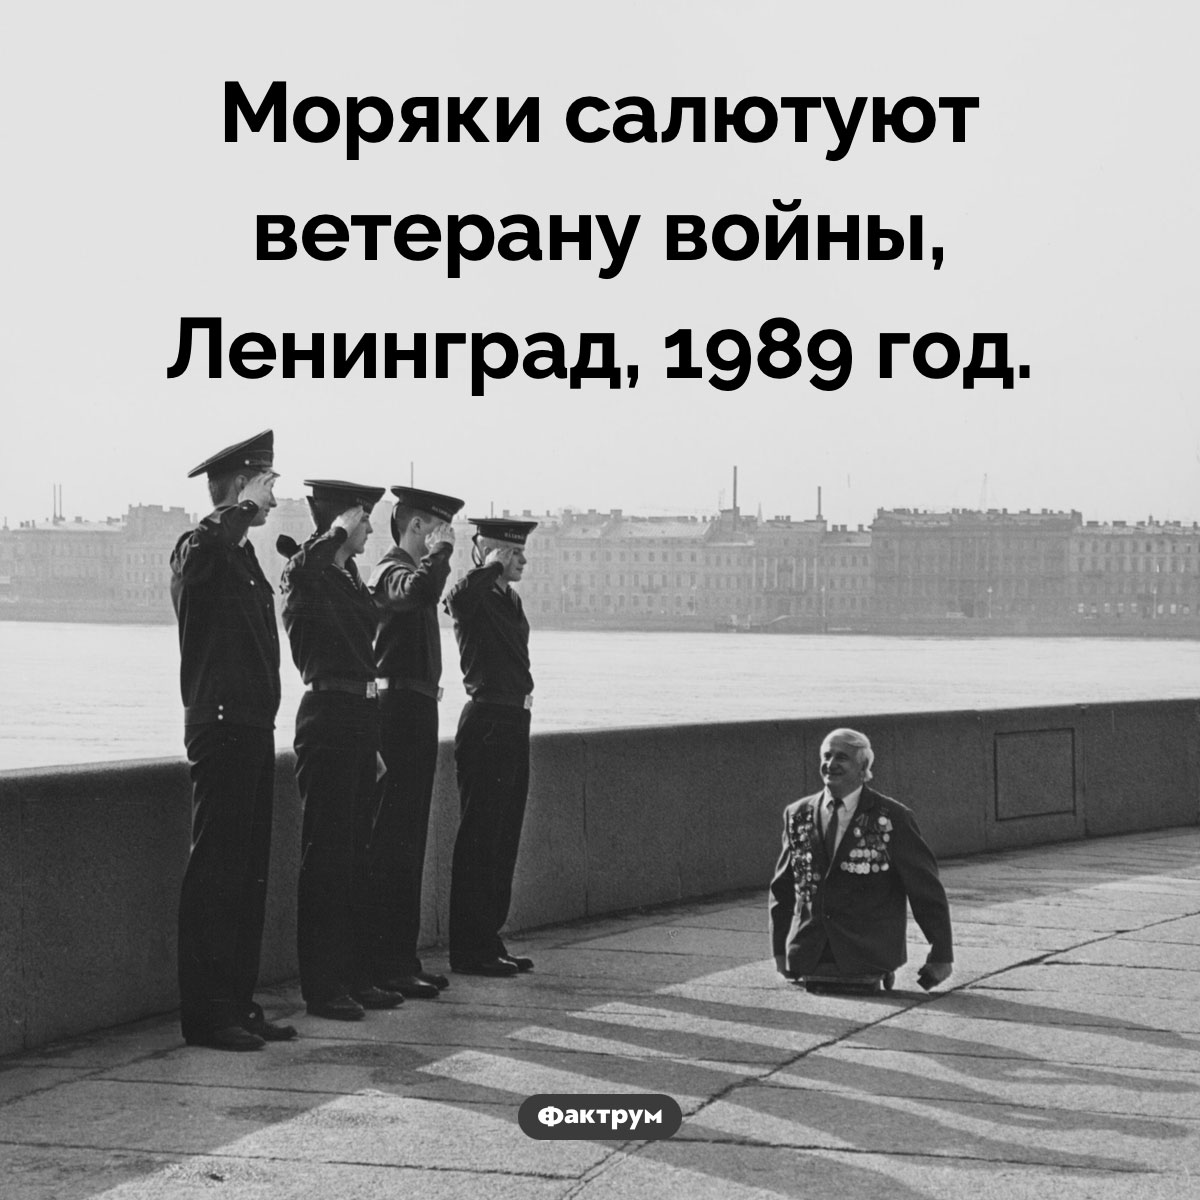 Ветеран. Моряки салютуют ветерану войны, Ленинград, 1989 год.